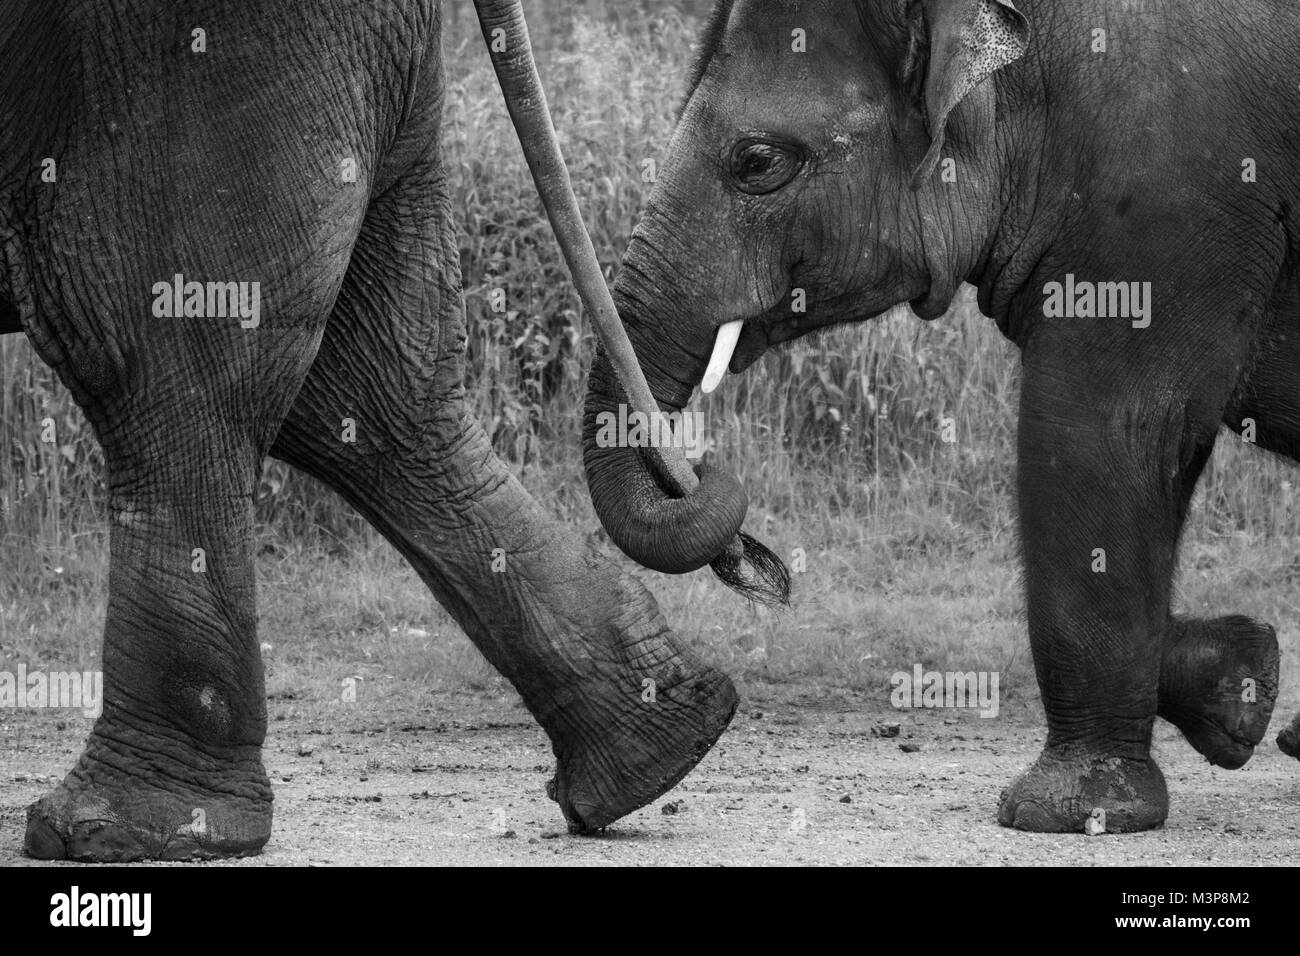 Les éléphants d'Asie balade dans la ligne, l'un des éléphants une autre attente en ligne à la queue ZSL zoo de Whipsnade Banque D'Images